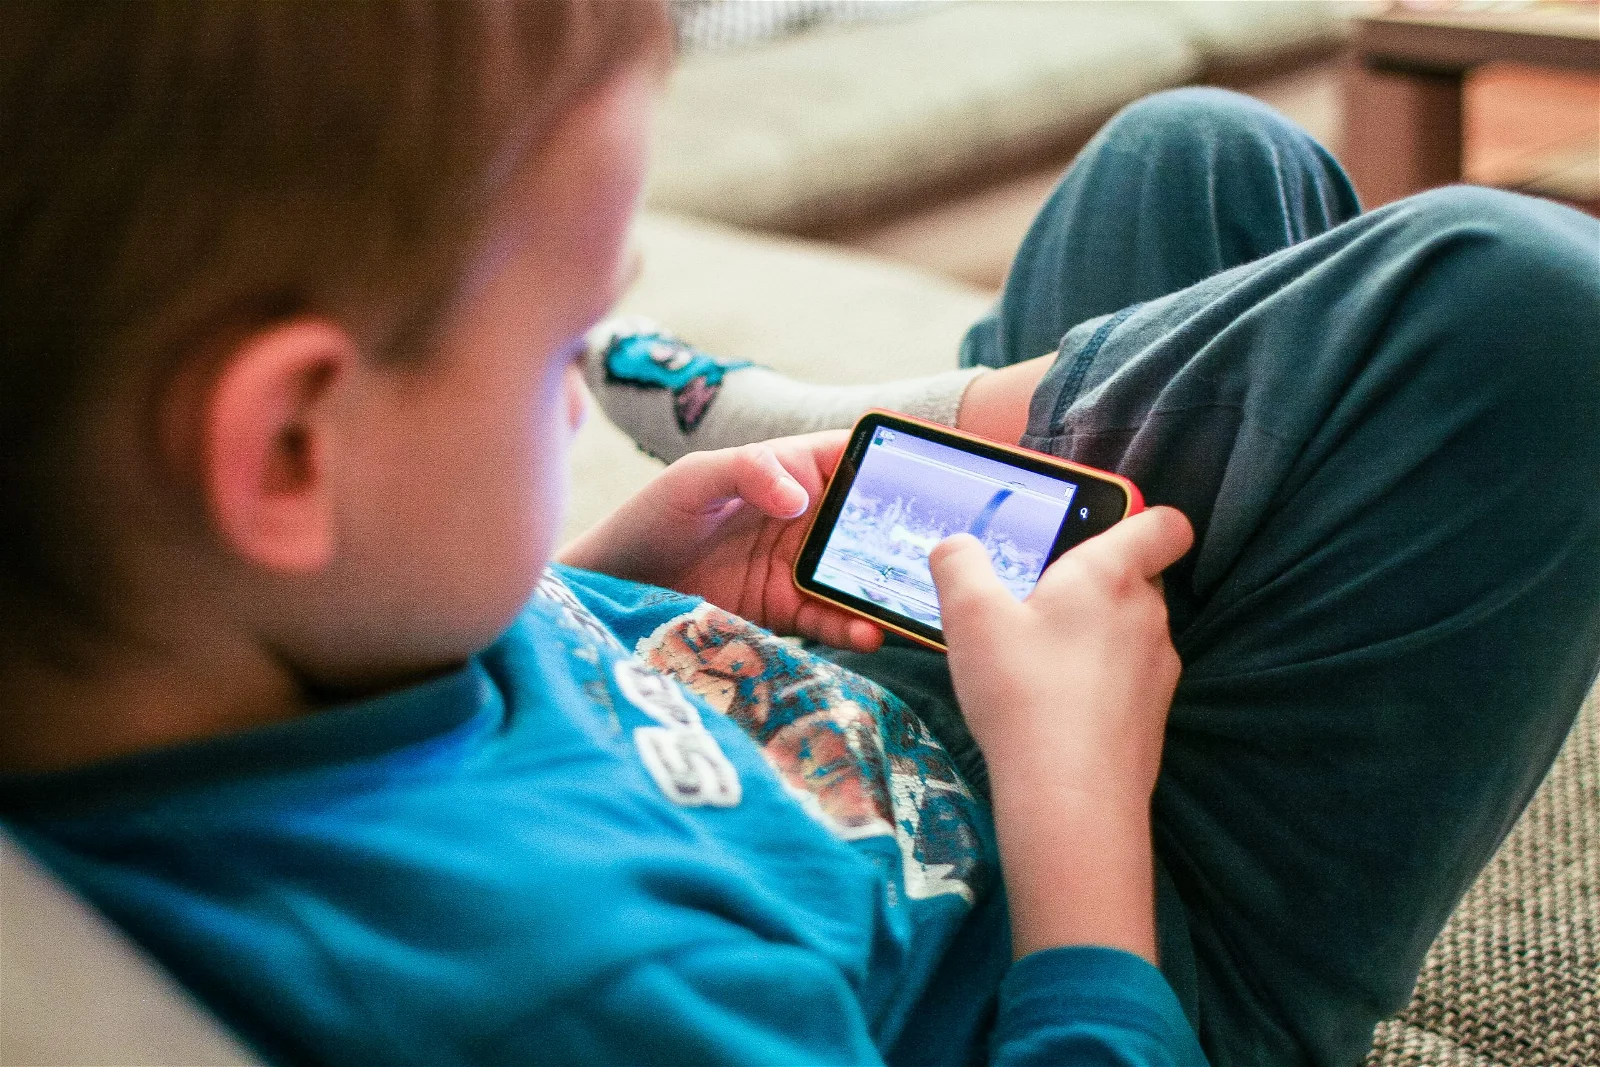 Smartphone e Pc: un decalogo per la “salute digitale” di bambini e ragazzi